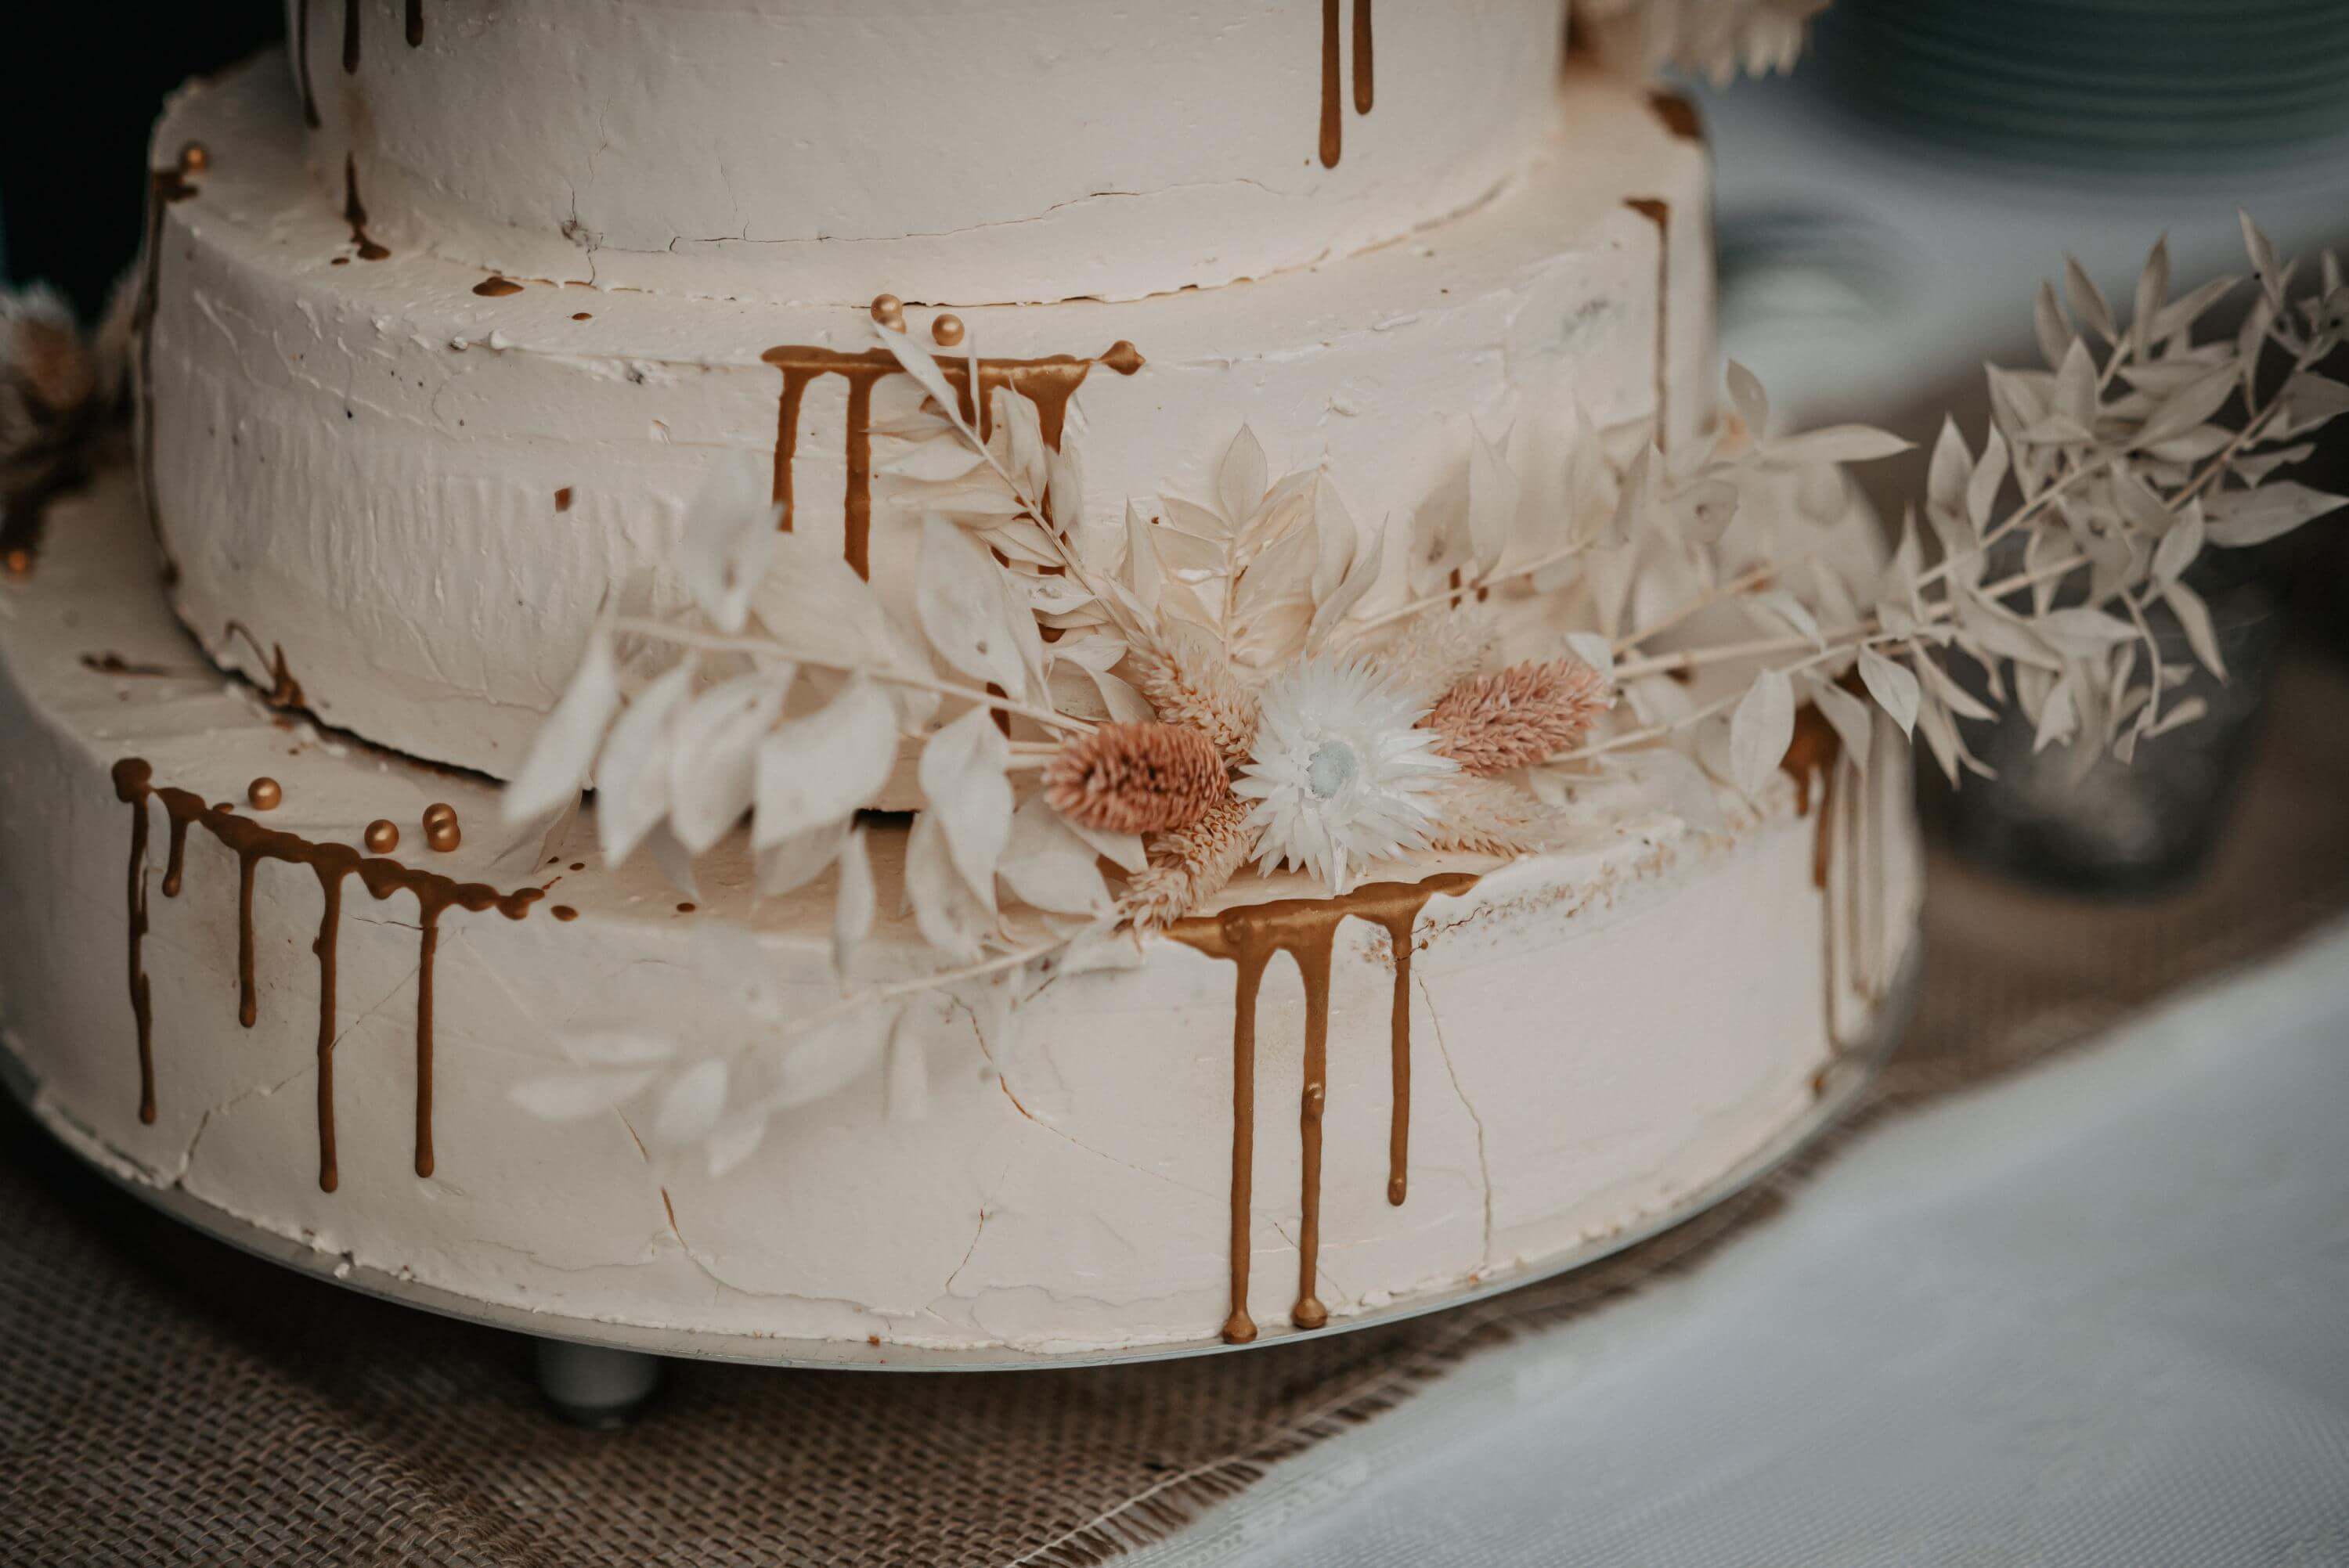 Eine dreigeschössige Buttercréme-Hochzeitstorte ist im Drip Cake Stil dekoriert und steht zum Verzehr bereit.